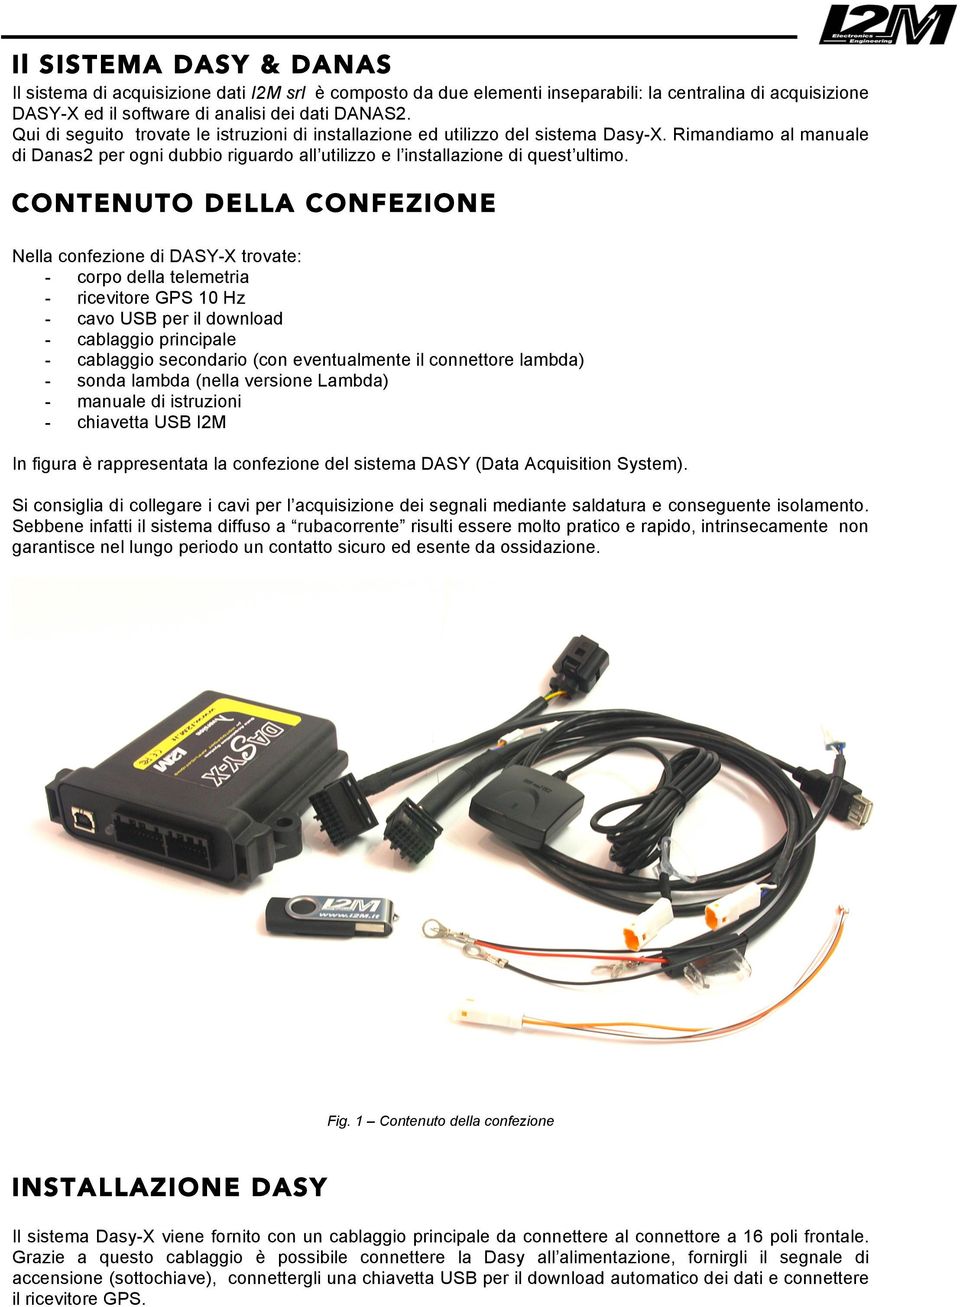 CONTENUTO DELLA CONFEZIONE Nella confezione di DASY-X trovate: - corpo della telemetria - ricevitore GPS 10 Hz - cavo USB per il download - cablaggio principale - cablaggio secondario (con